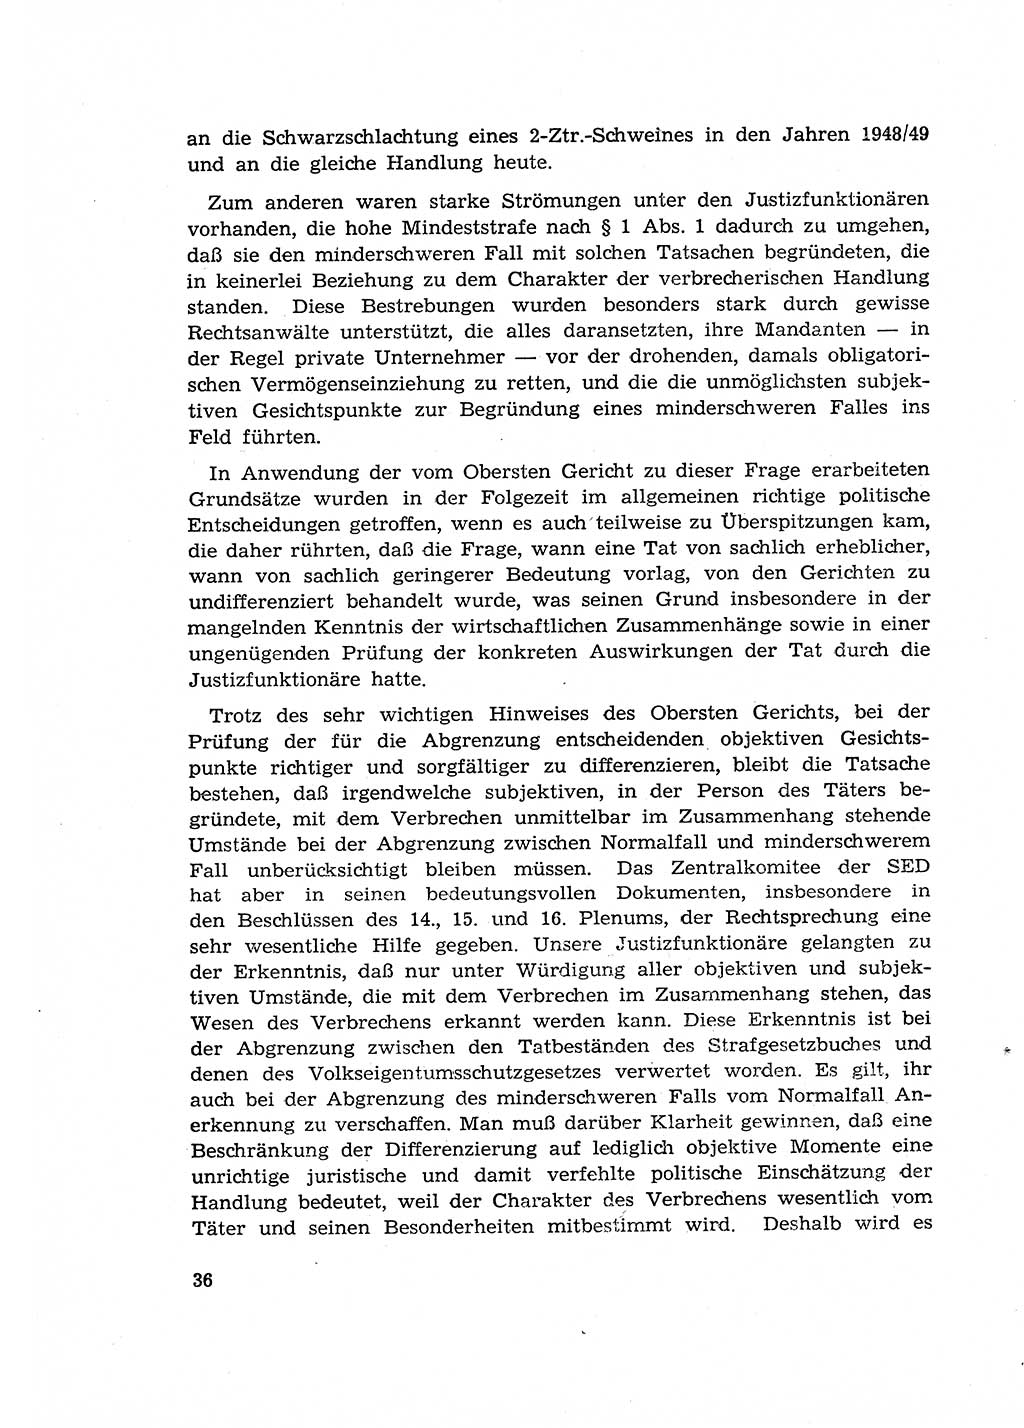 Materialien zum Strafrecht, Besonderer Teil [Deutsche Demokratische Republik (DDR)] 1955, Seite 36 (Mat. Strafr. BT DDR 1955, S. 36)